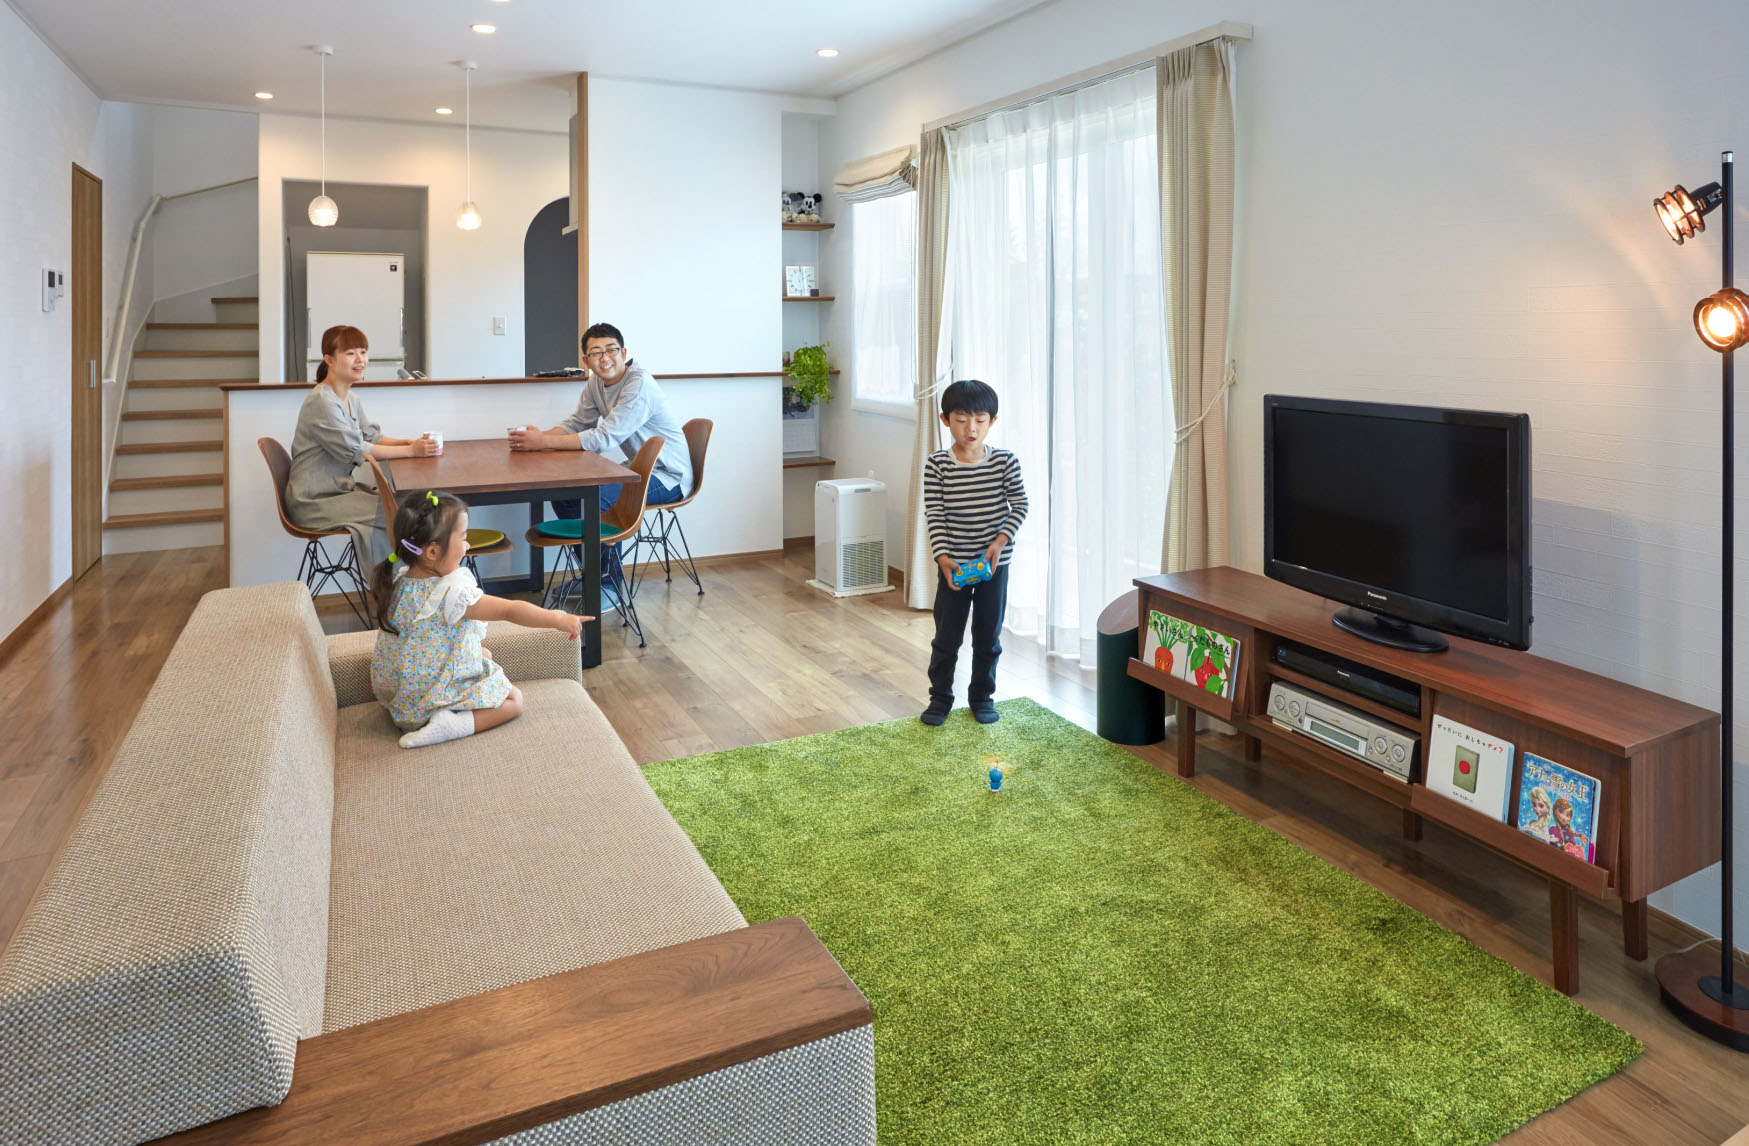 O様 ４人家族 夫婦 子ども2人 福島県二本松市の新築一戸建て 注文住宅の建築ならマルヨシ工業